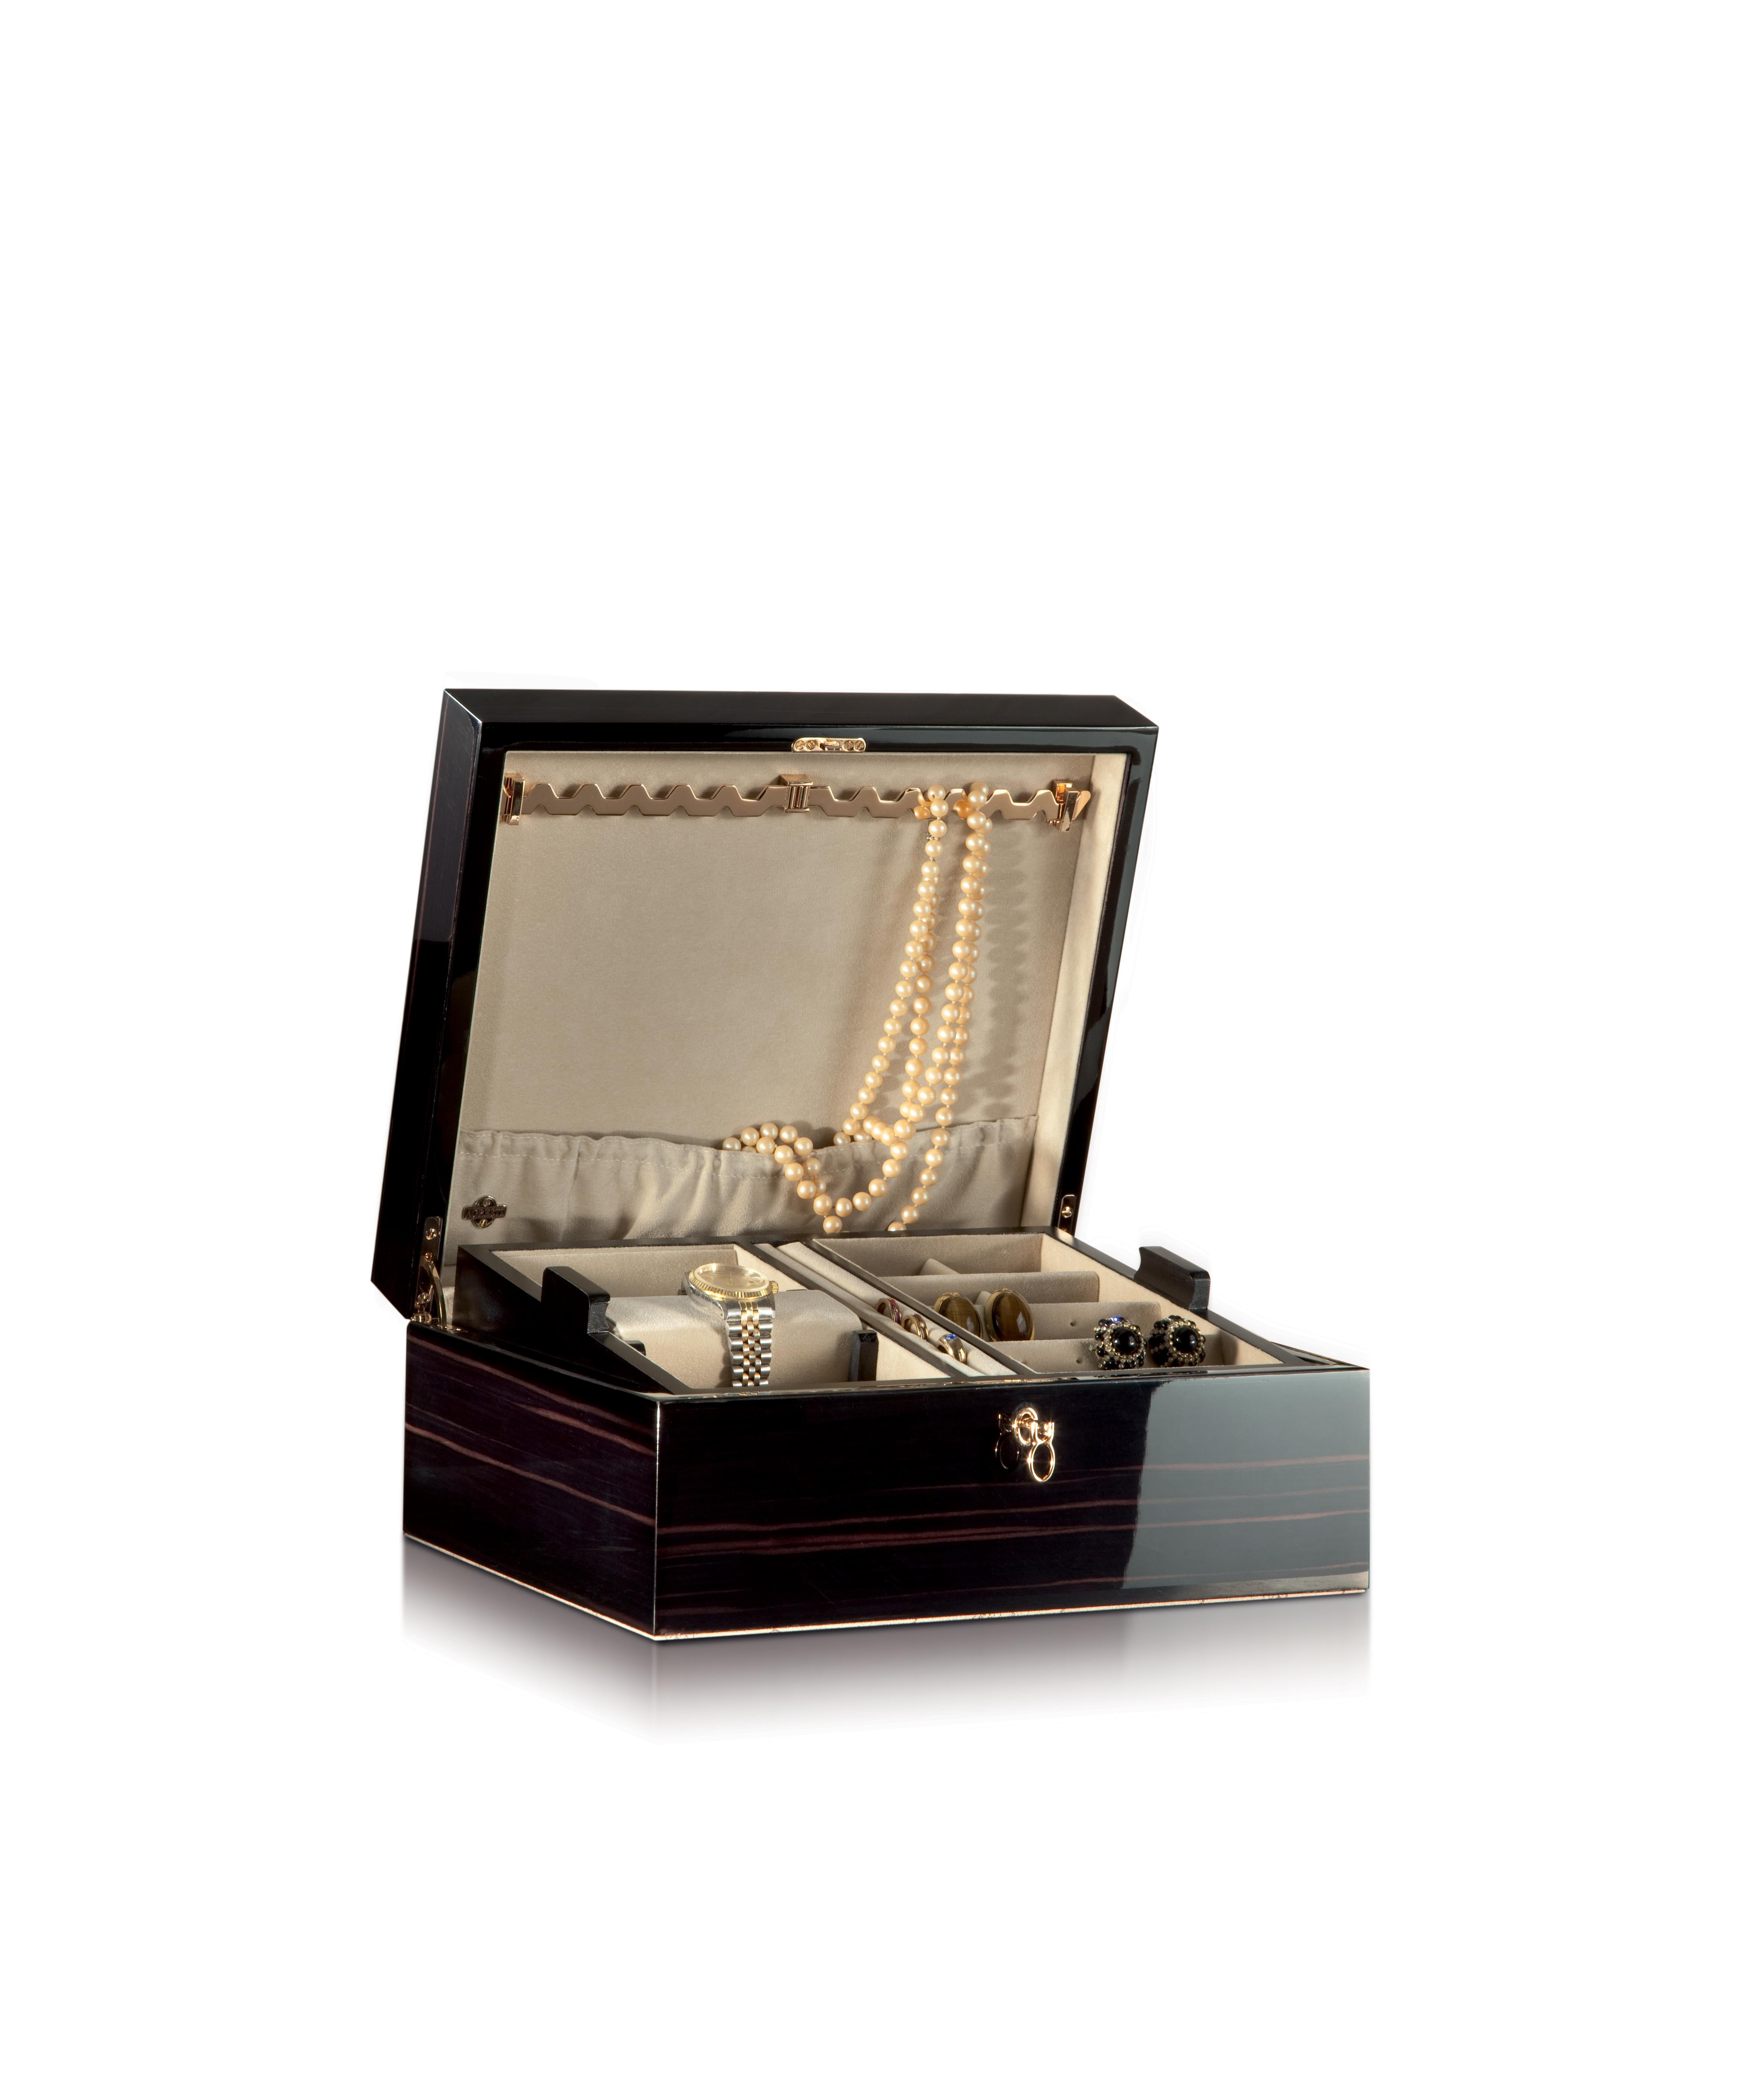 For Sale: Black (Ebony) Agresti Il Cofanetto Jewelry Box 2